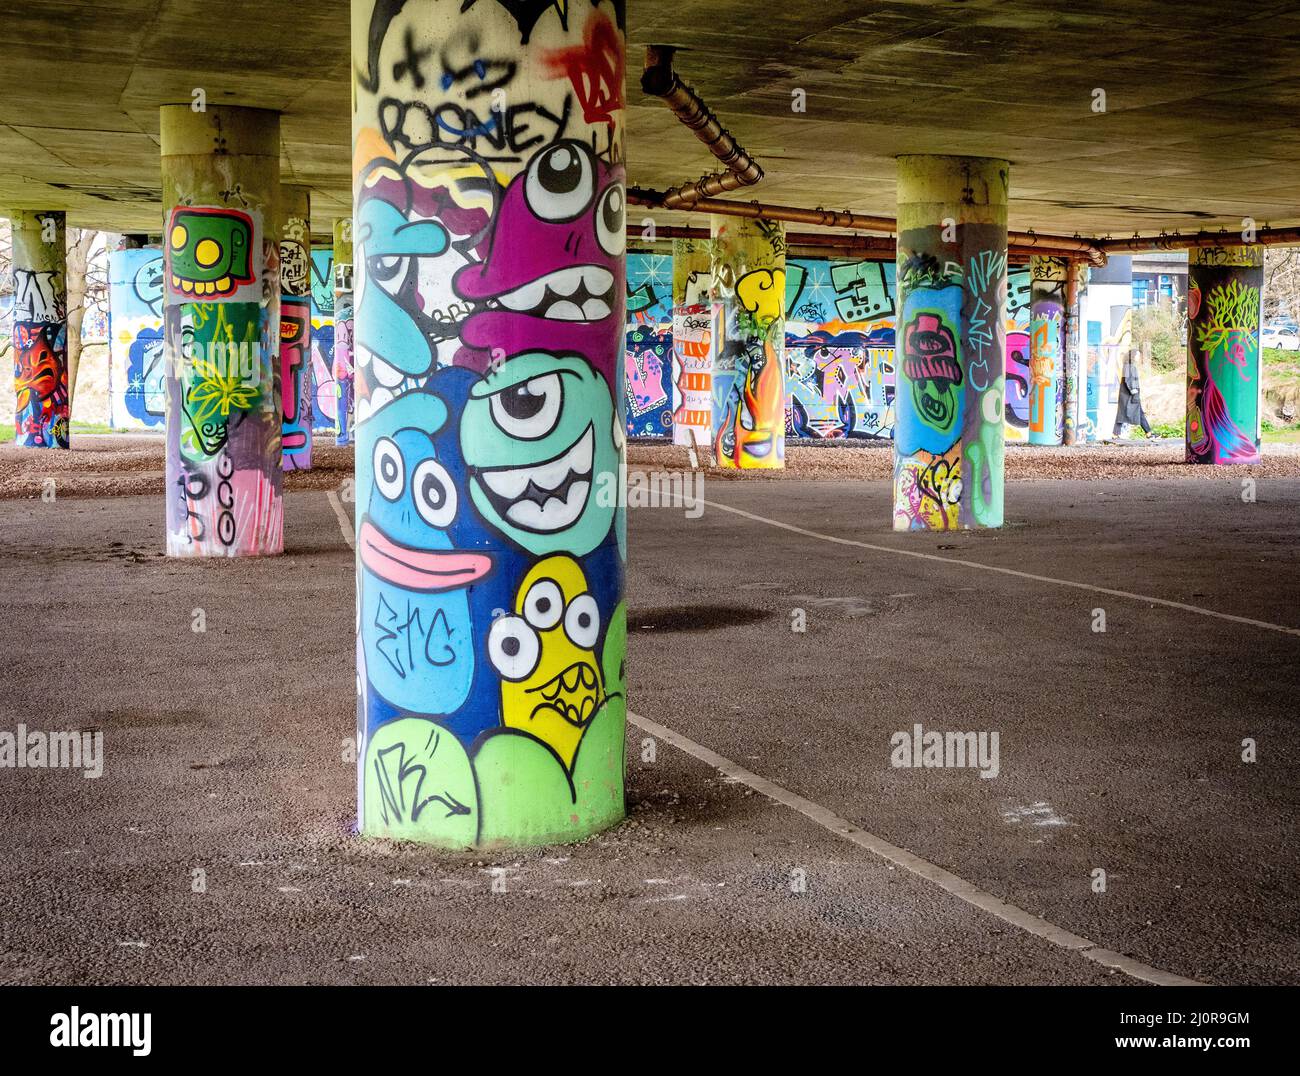 Flyover-Stützen des Straßensystems des Cumberland Basin in Bristol in Großbritannien wurden als inoffizielle Graffiti-Street-Art-Galerie verwendet Stockfoto